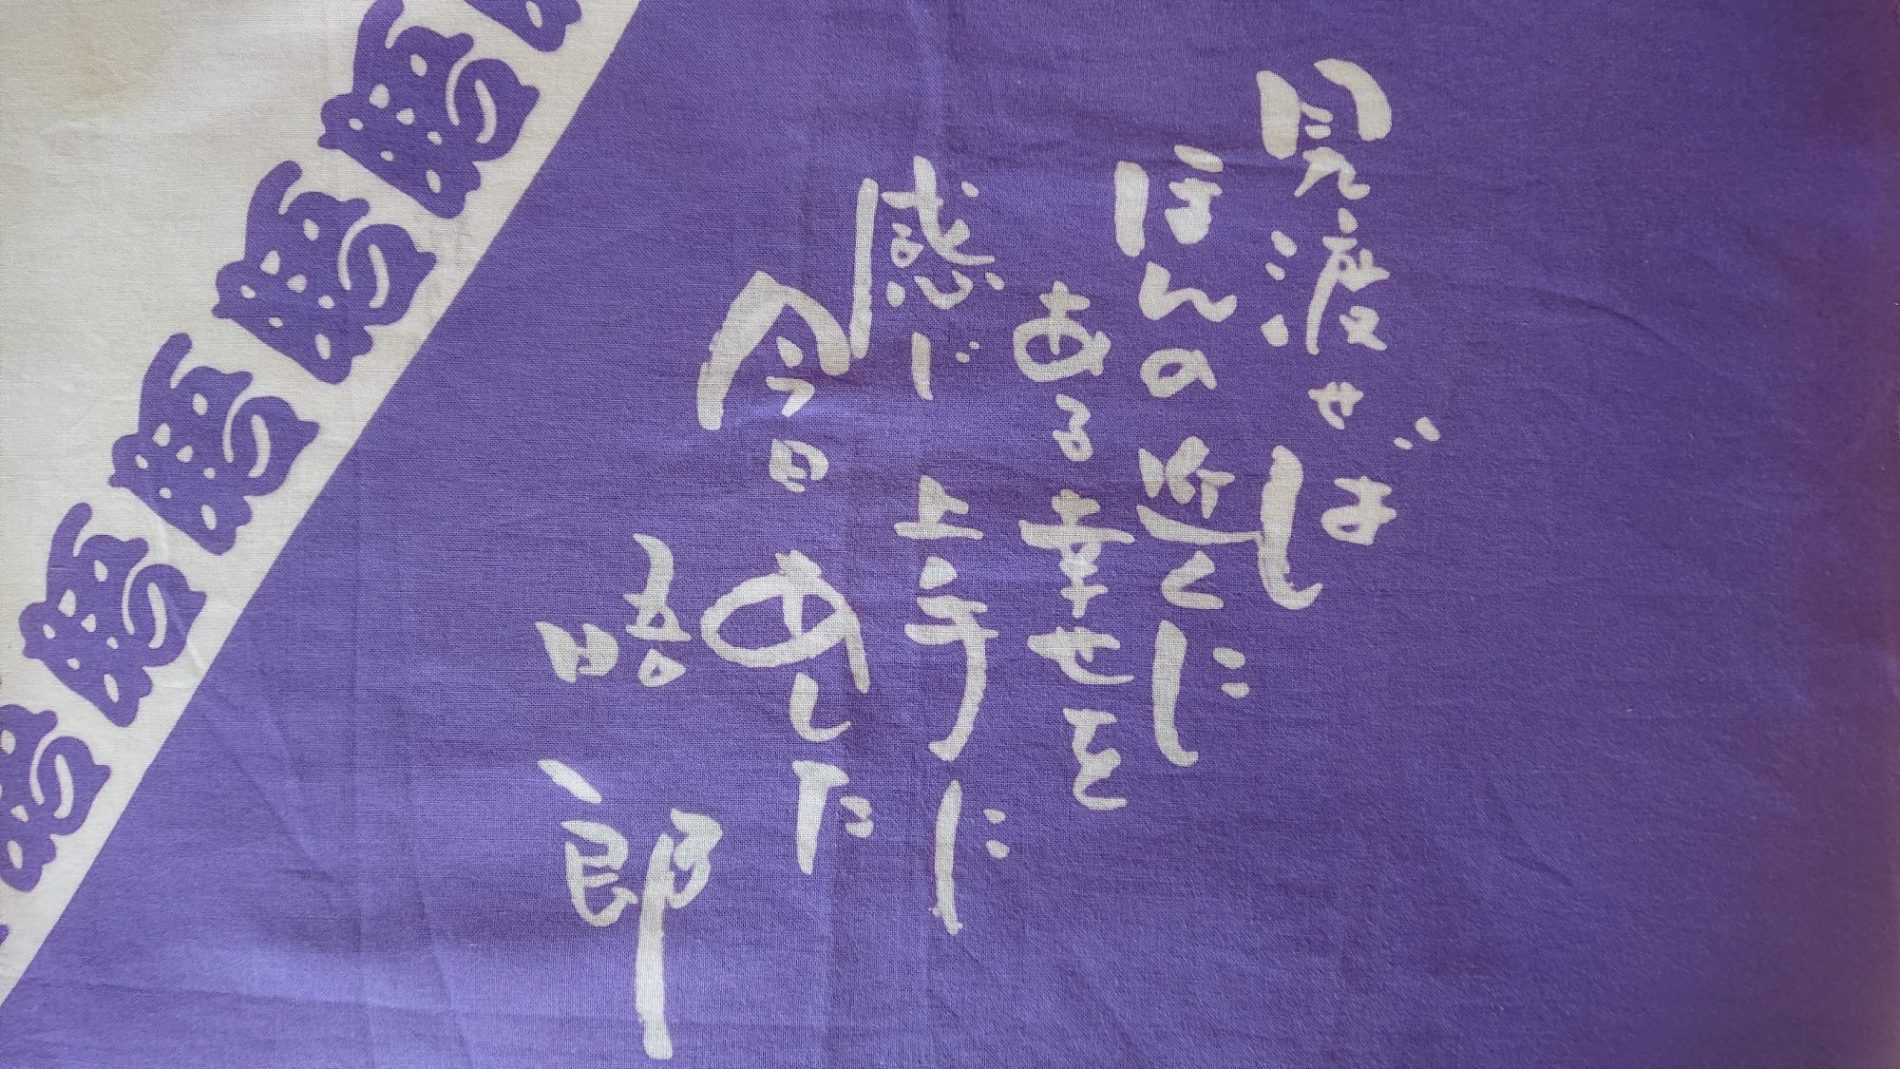 晤郎さんの一人語りの会「紺屋高尾」２０１１年小樽で配布された物。